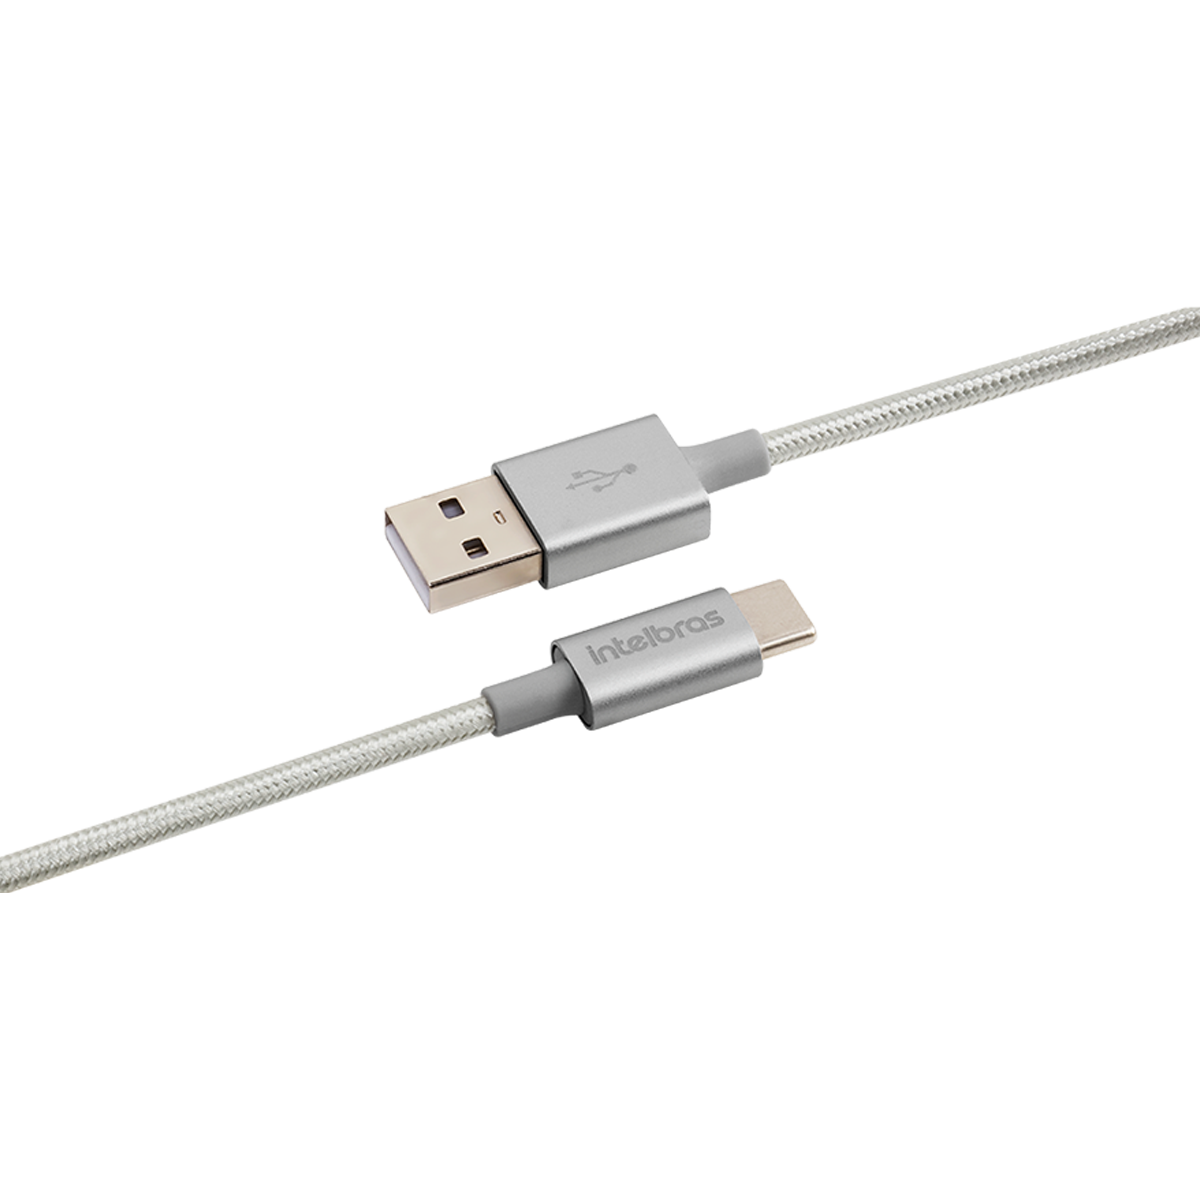 Cable USB-C para USB-C EUCC 15NB